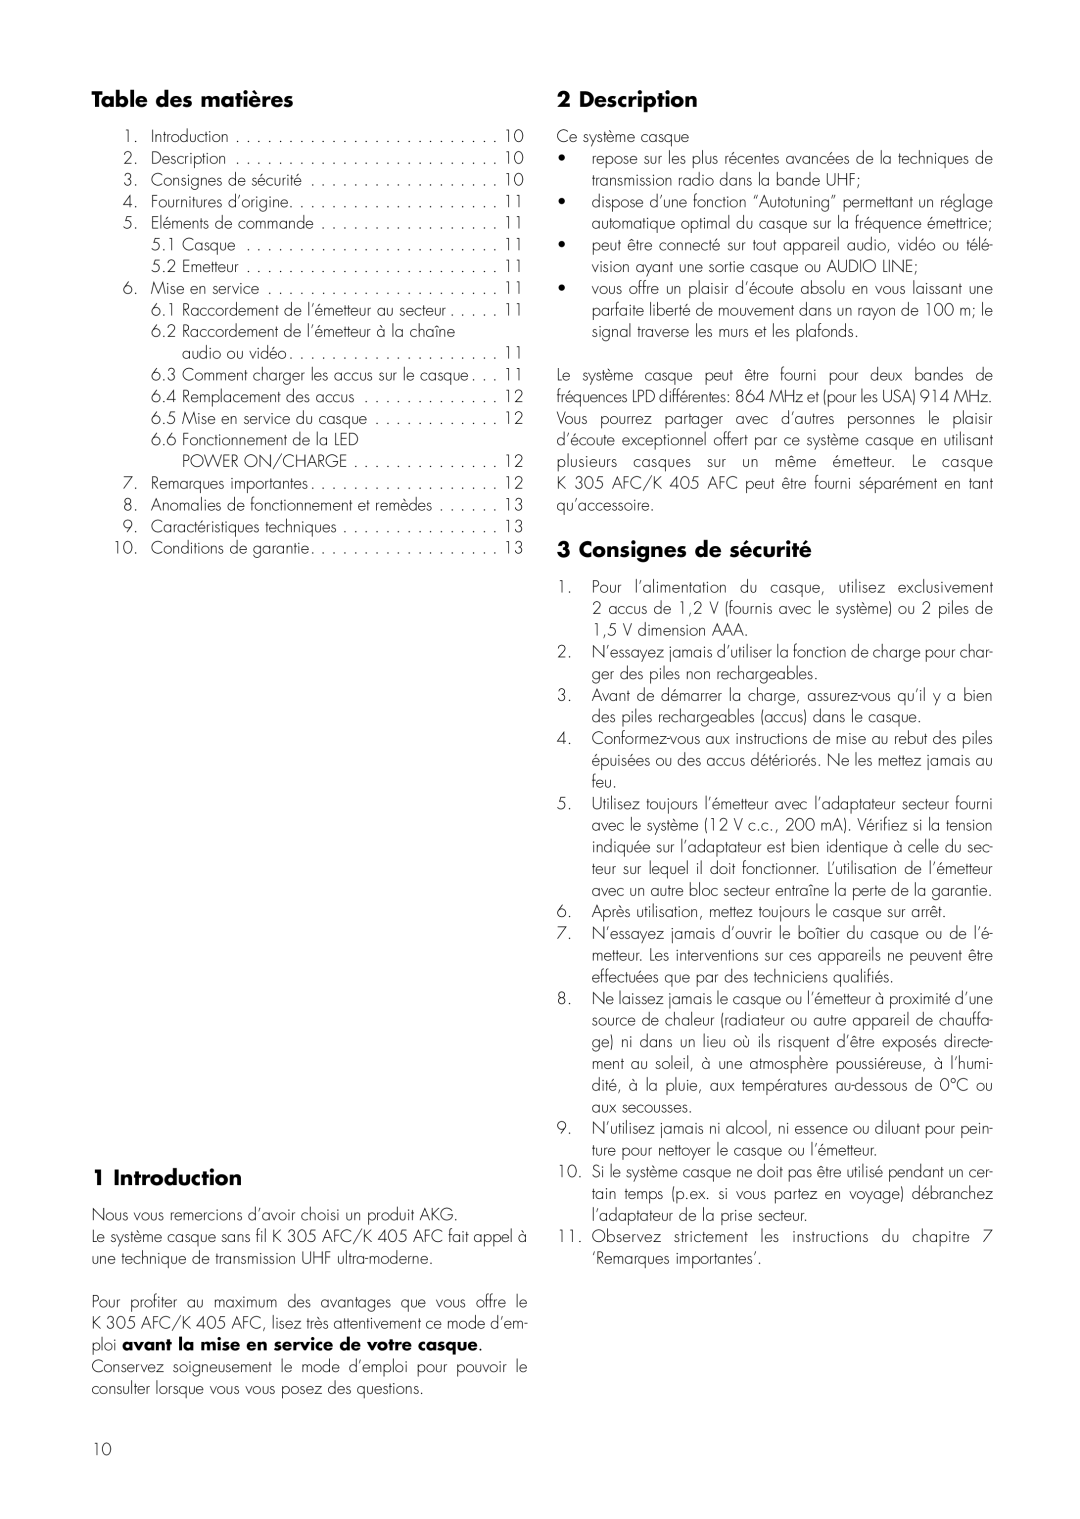 AKG Acoustics K 305 AFC, K 405 AFC manual Table des matières, Consignes de sécurité, Introduction, Description 